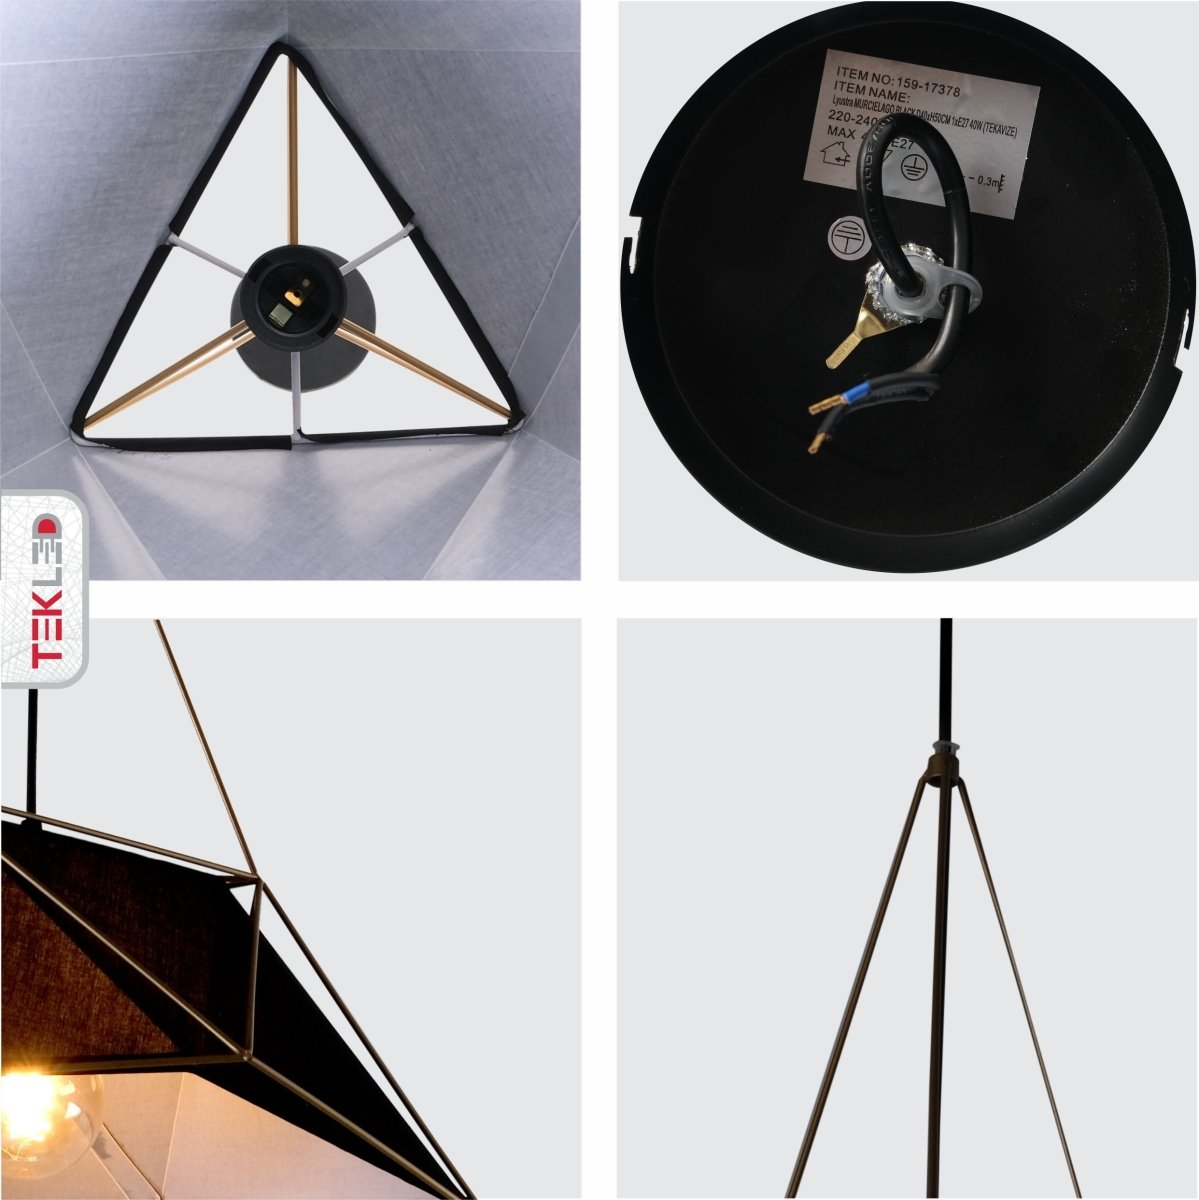 Detailed shots of Murcielago Black Metal Pendant Light with E27 Fitting | TEKLED 159-17378